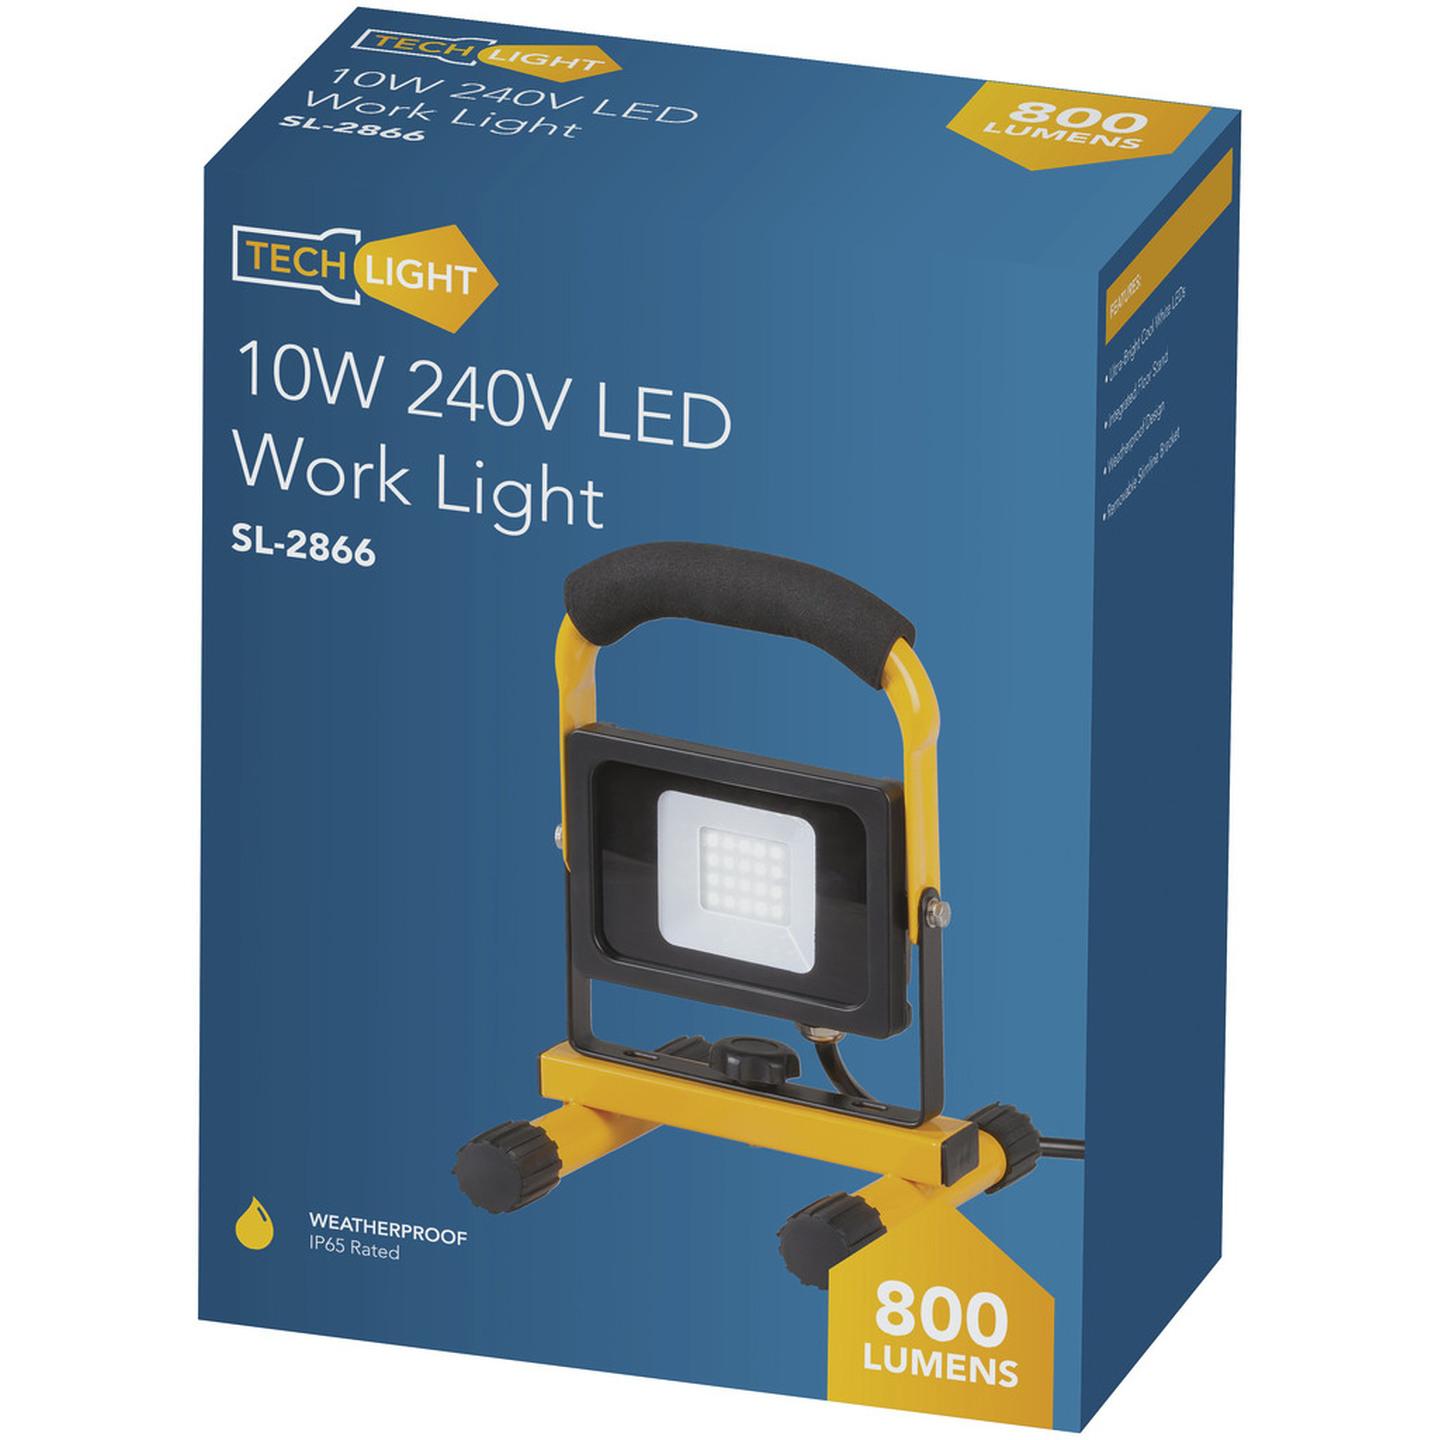 10W 240V LED Work Light